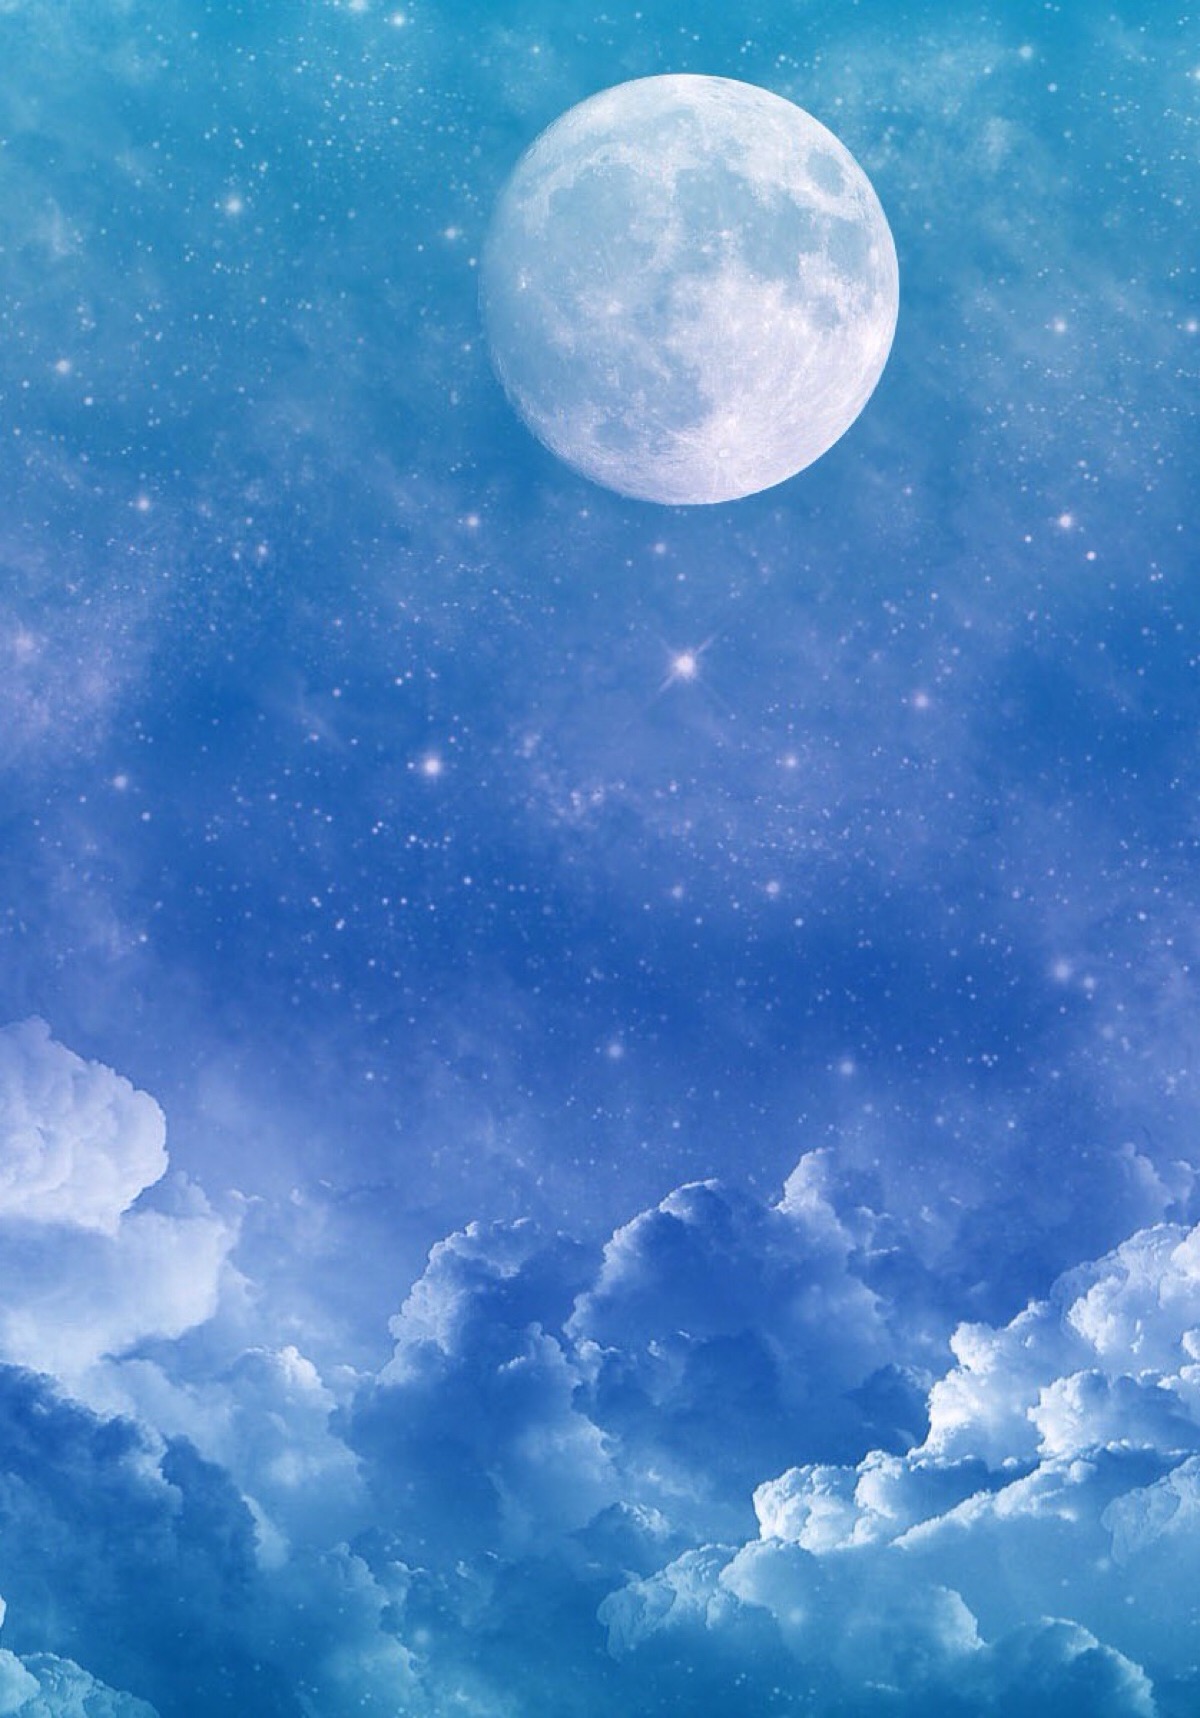 唯美星空 夜景 夜空 星光 月光 明月 自然风景 iphone手机壁纸 唯美